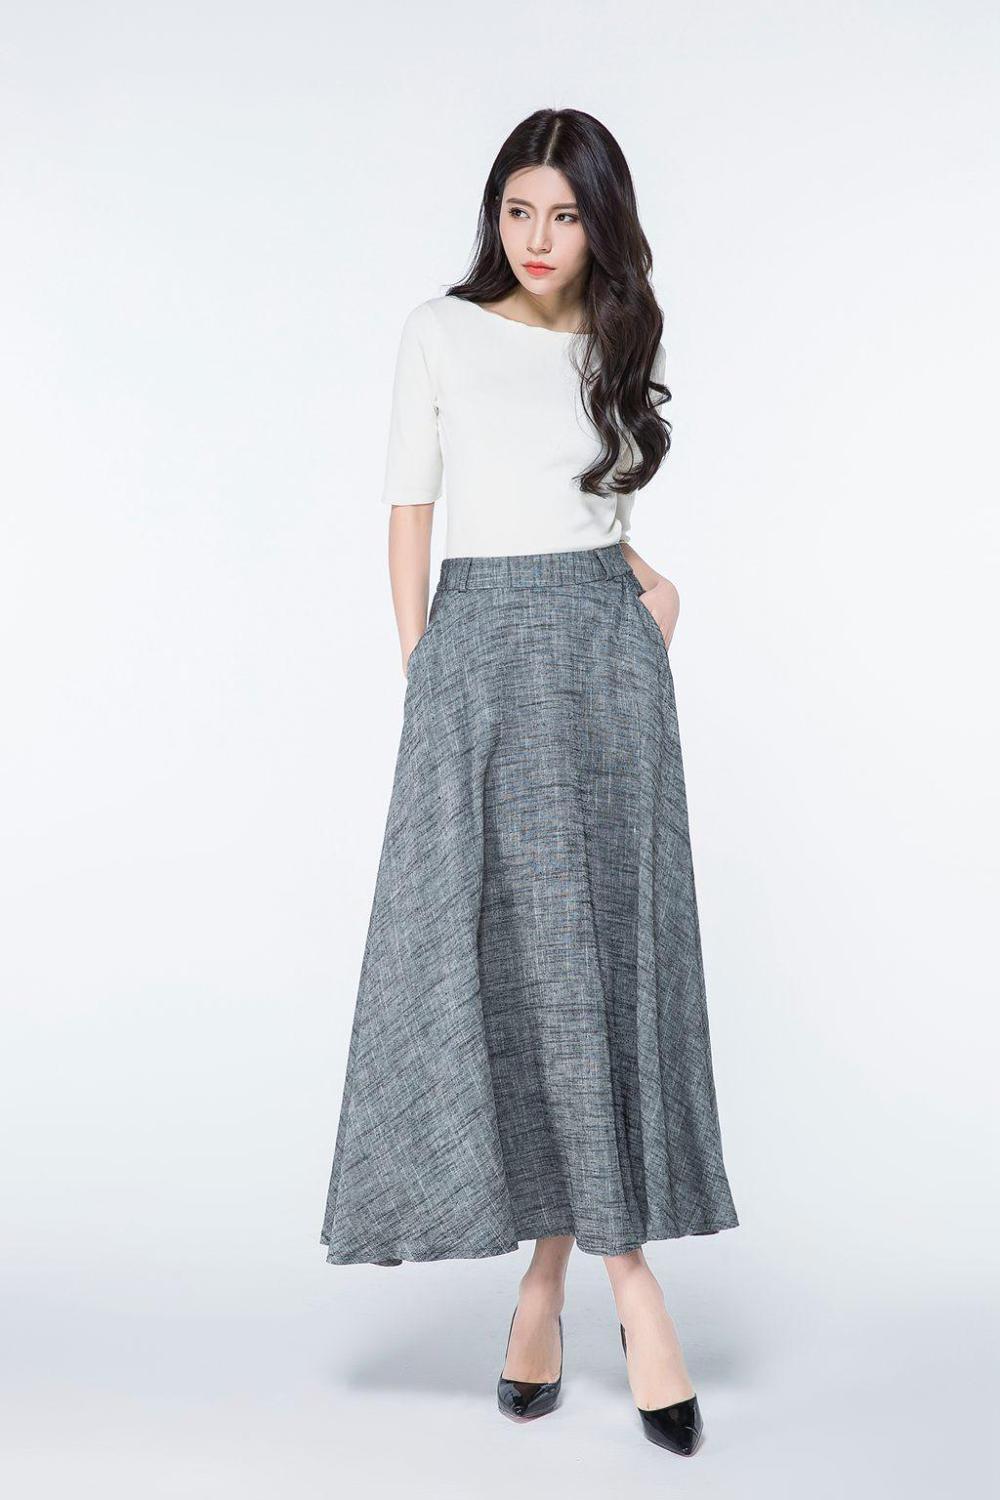 Linen Skirt, Long Maxi Linen Skirt for Women, A Line Skirt, Womens